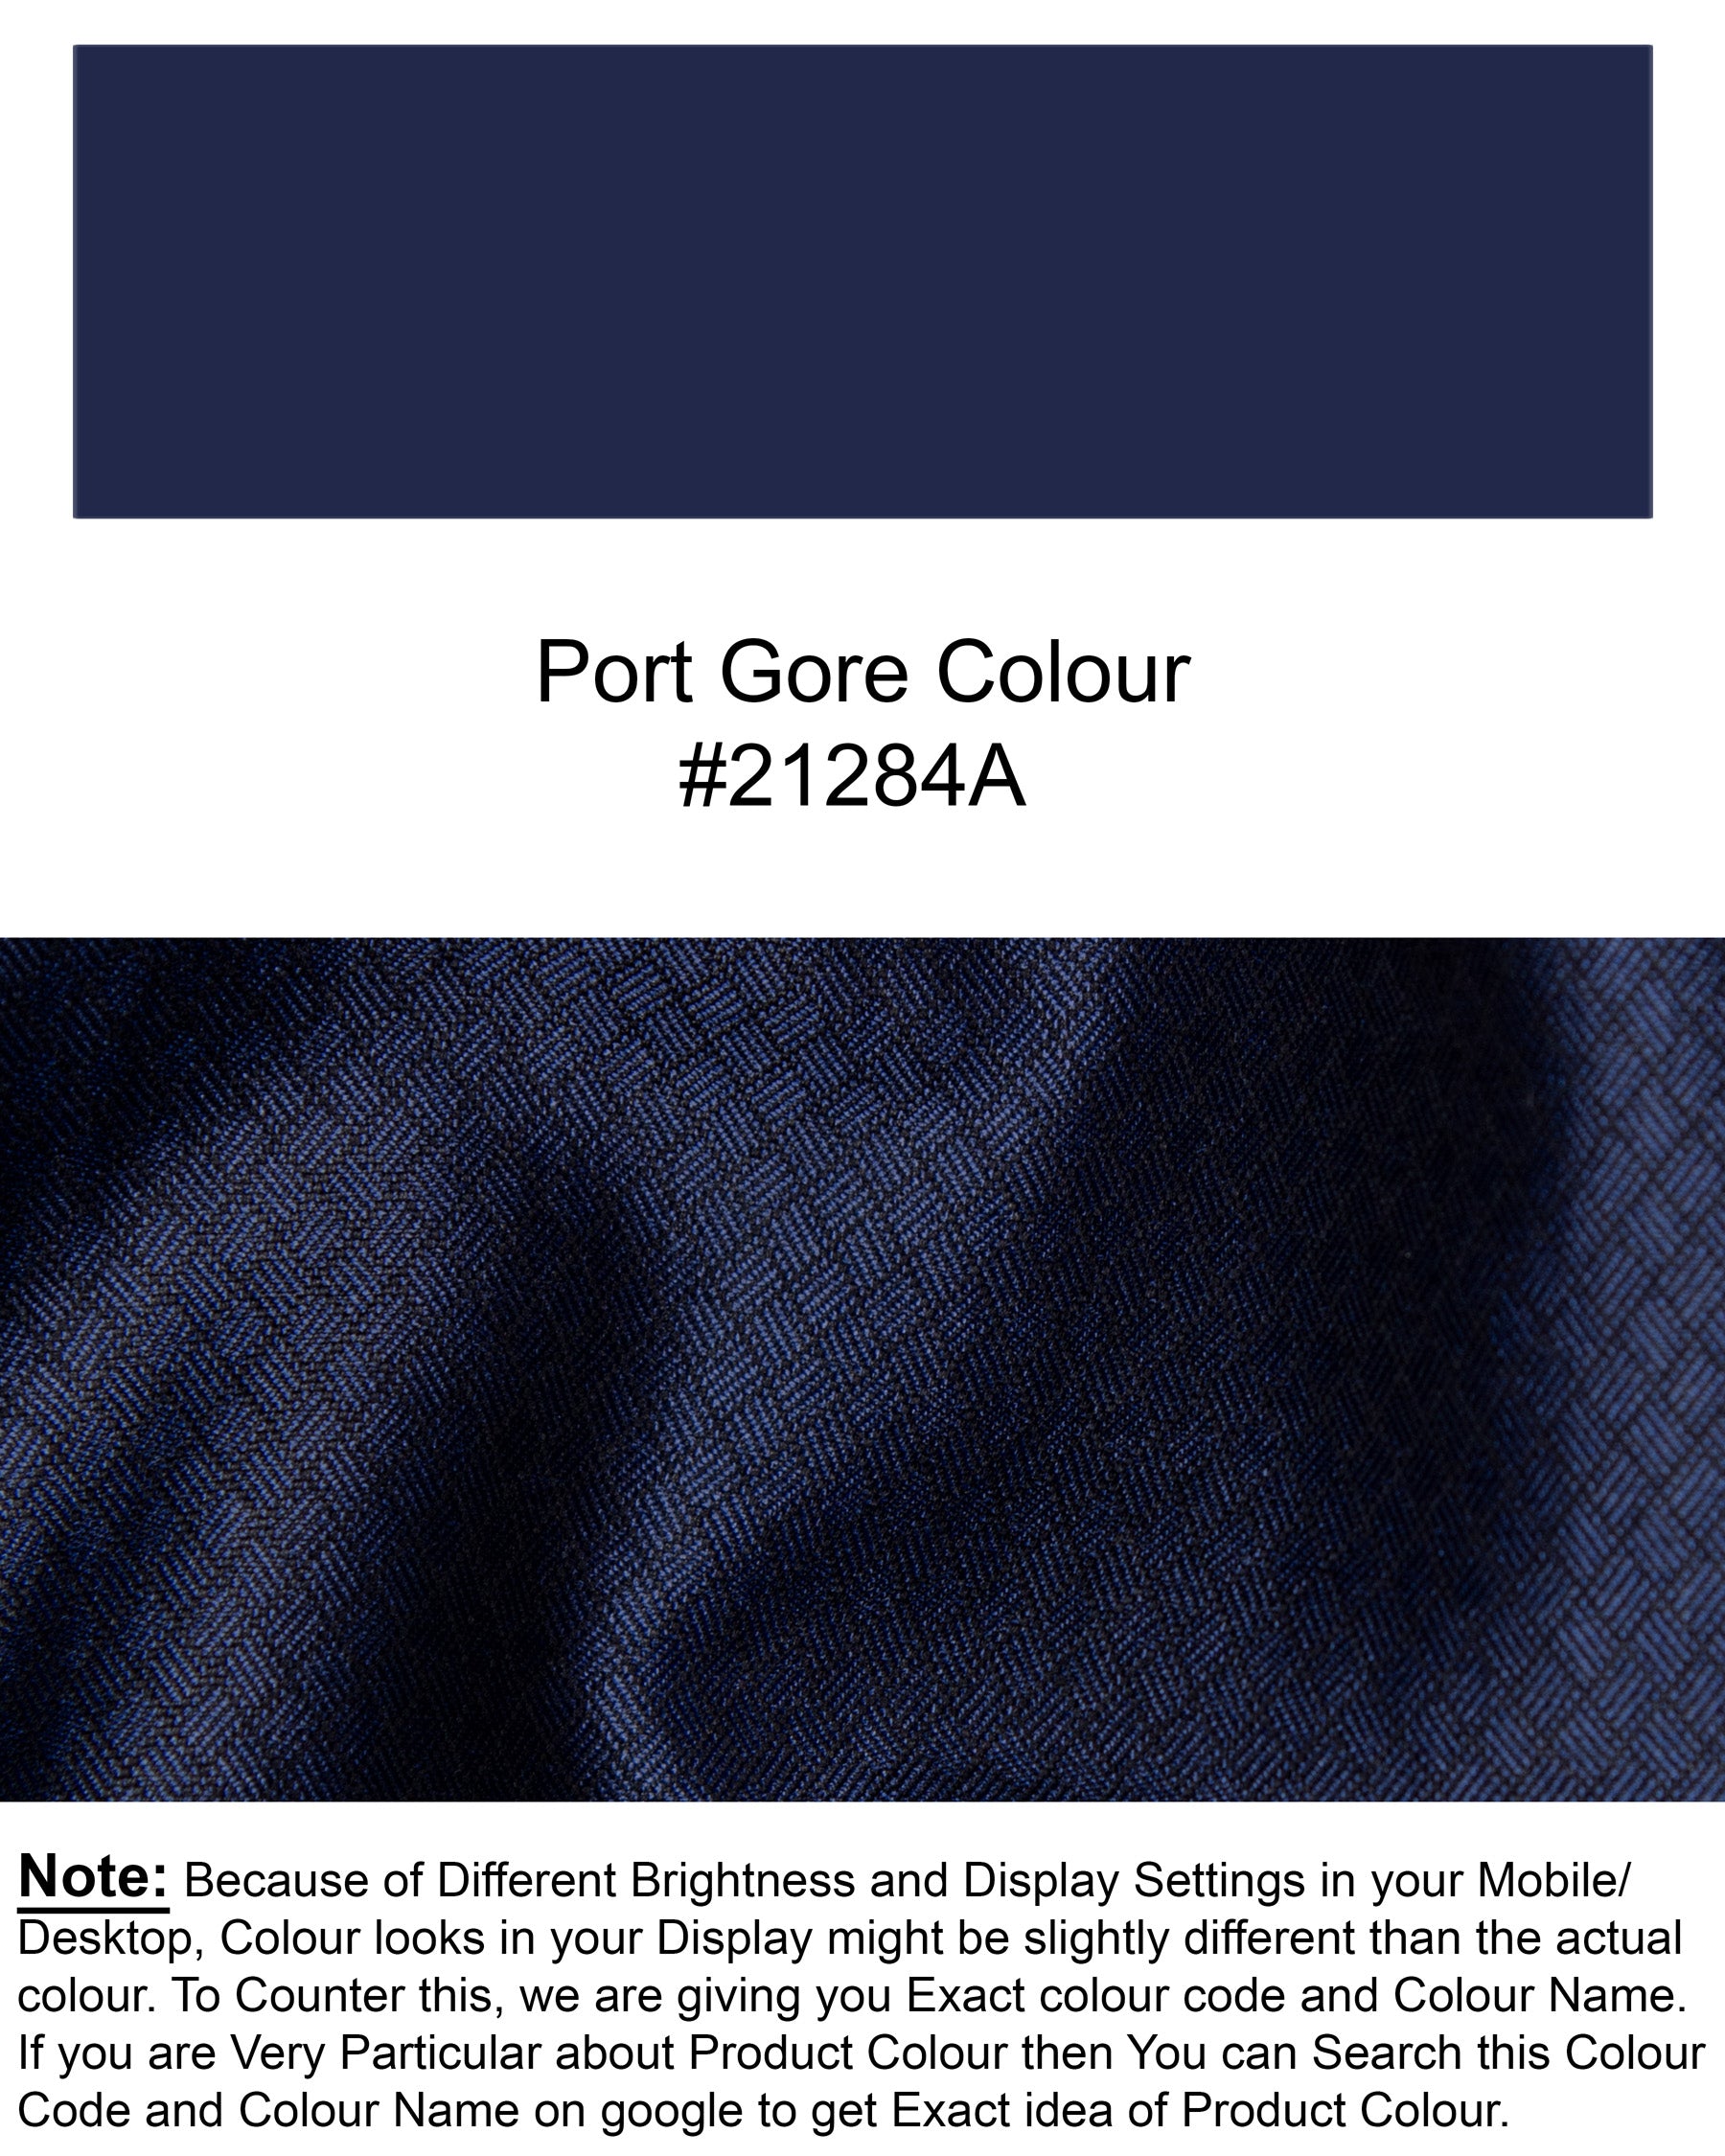 Port Gore Blue Subtle Textured Woolrich Pant